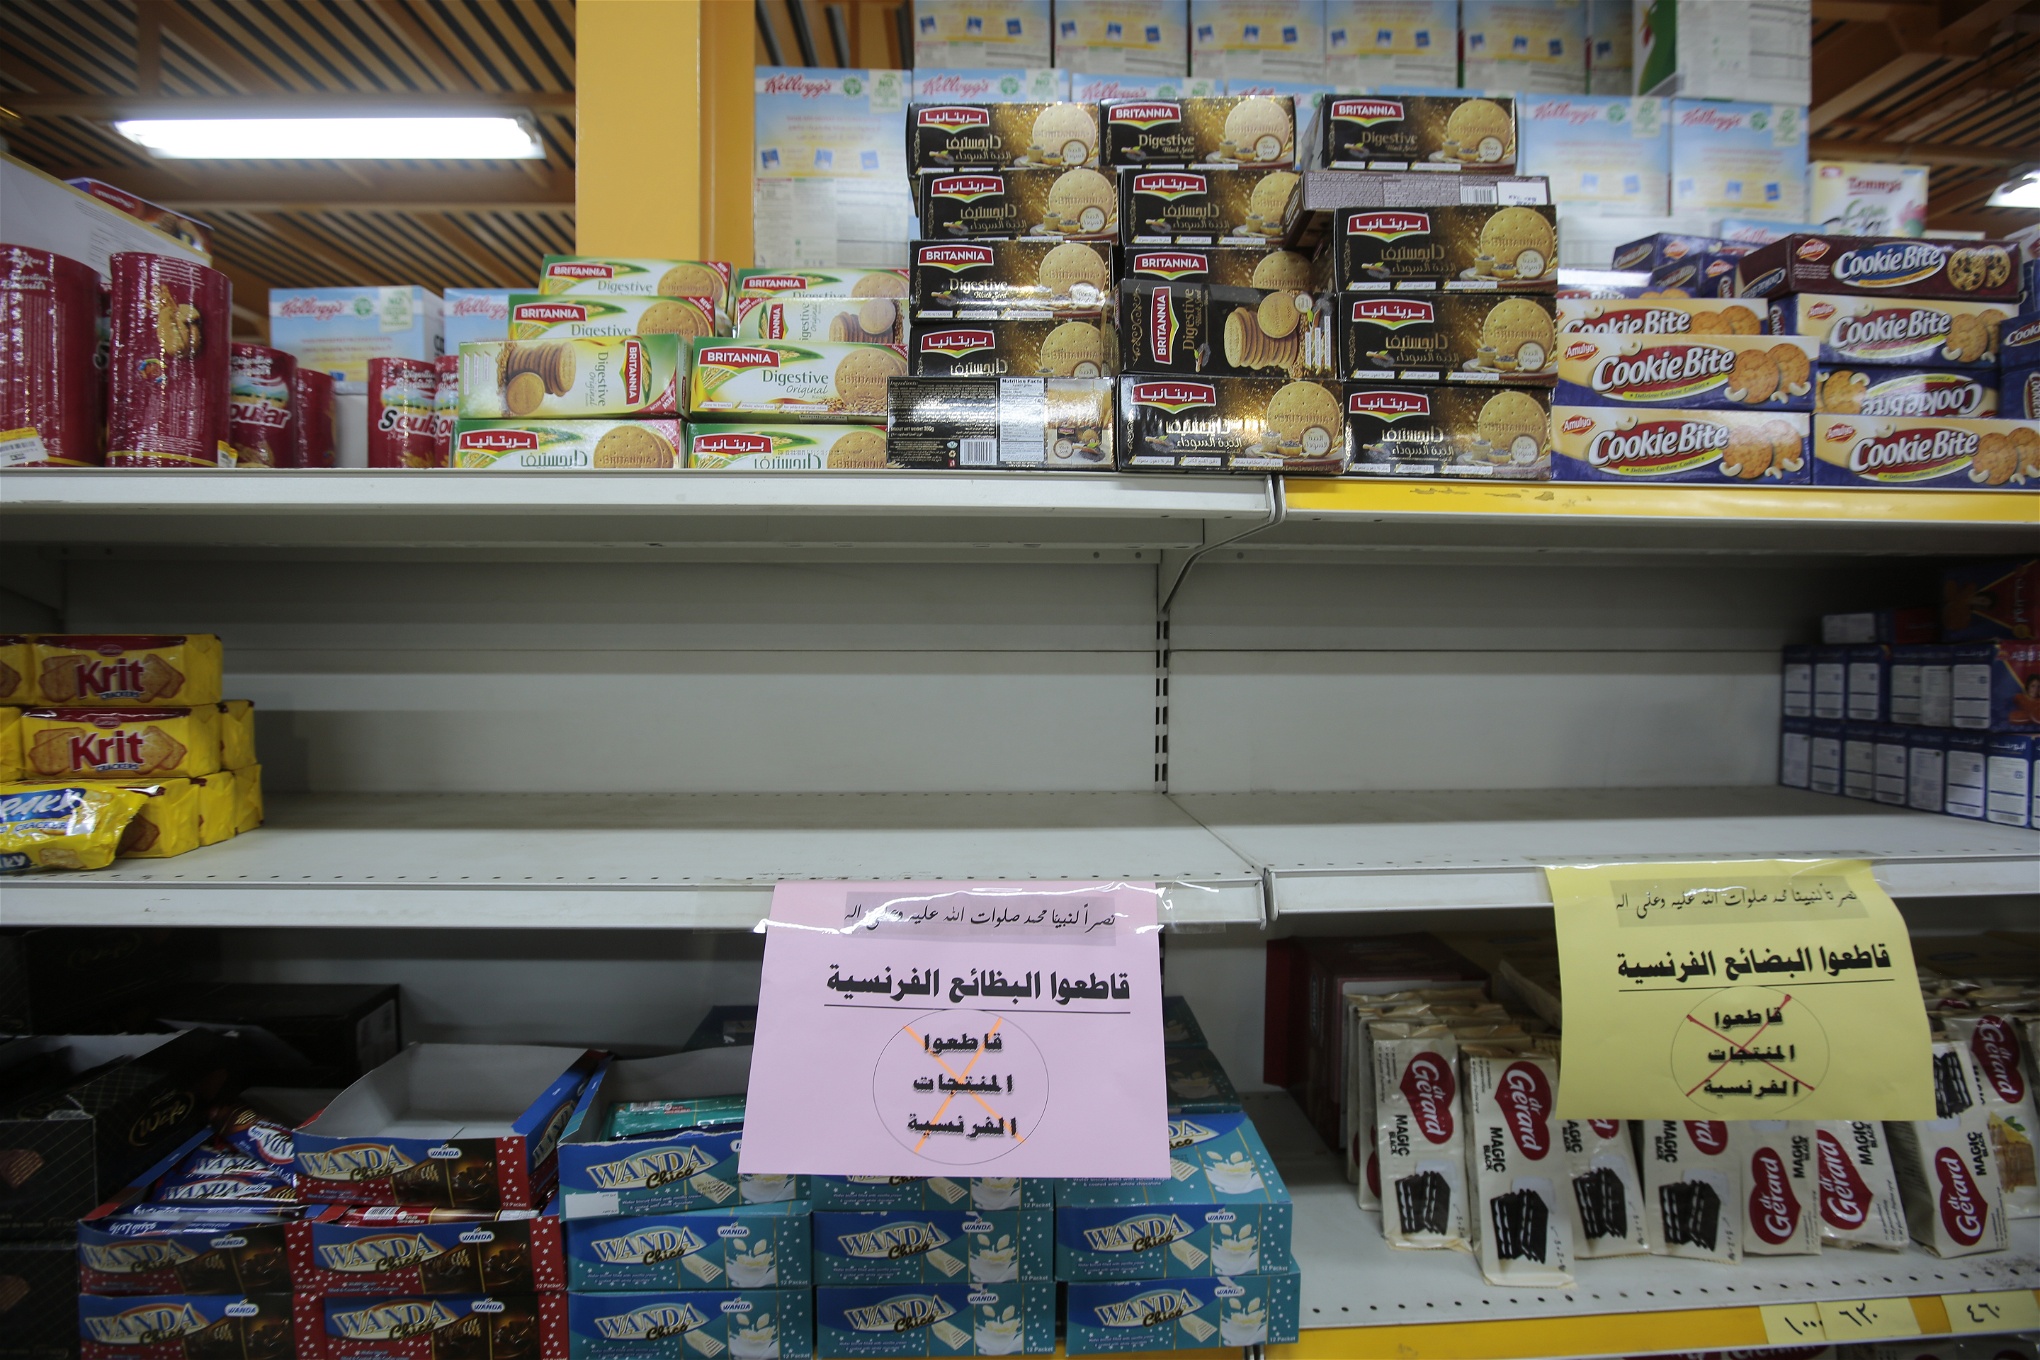 En butikshylla som gapar tom, skyltar med arabisk text uppmanar till boycott av franska varor.